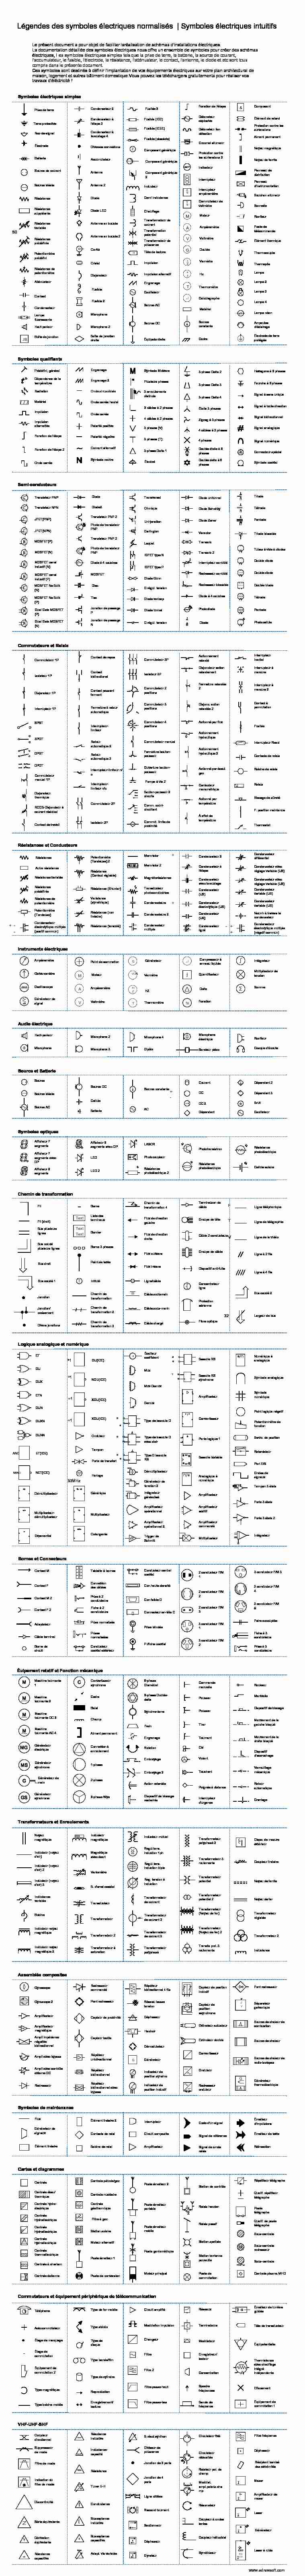 [PDF] Légendes des symboles électriques normalisés - EdrawSoft